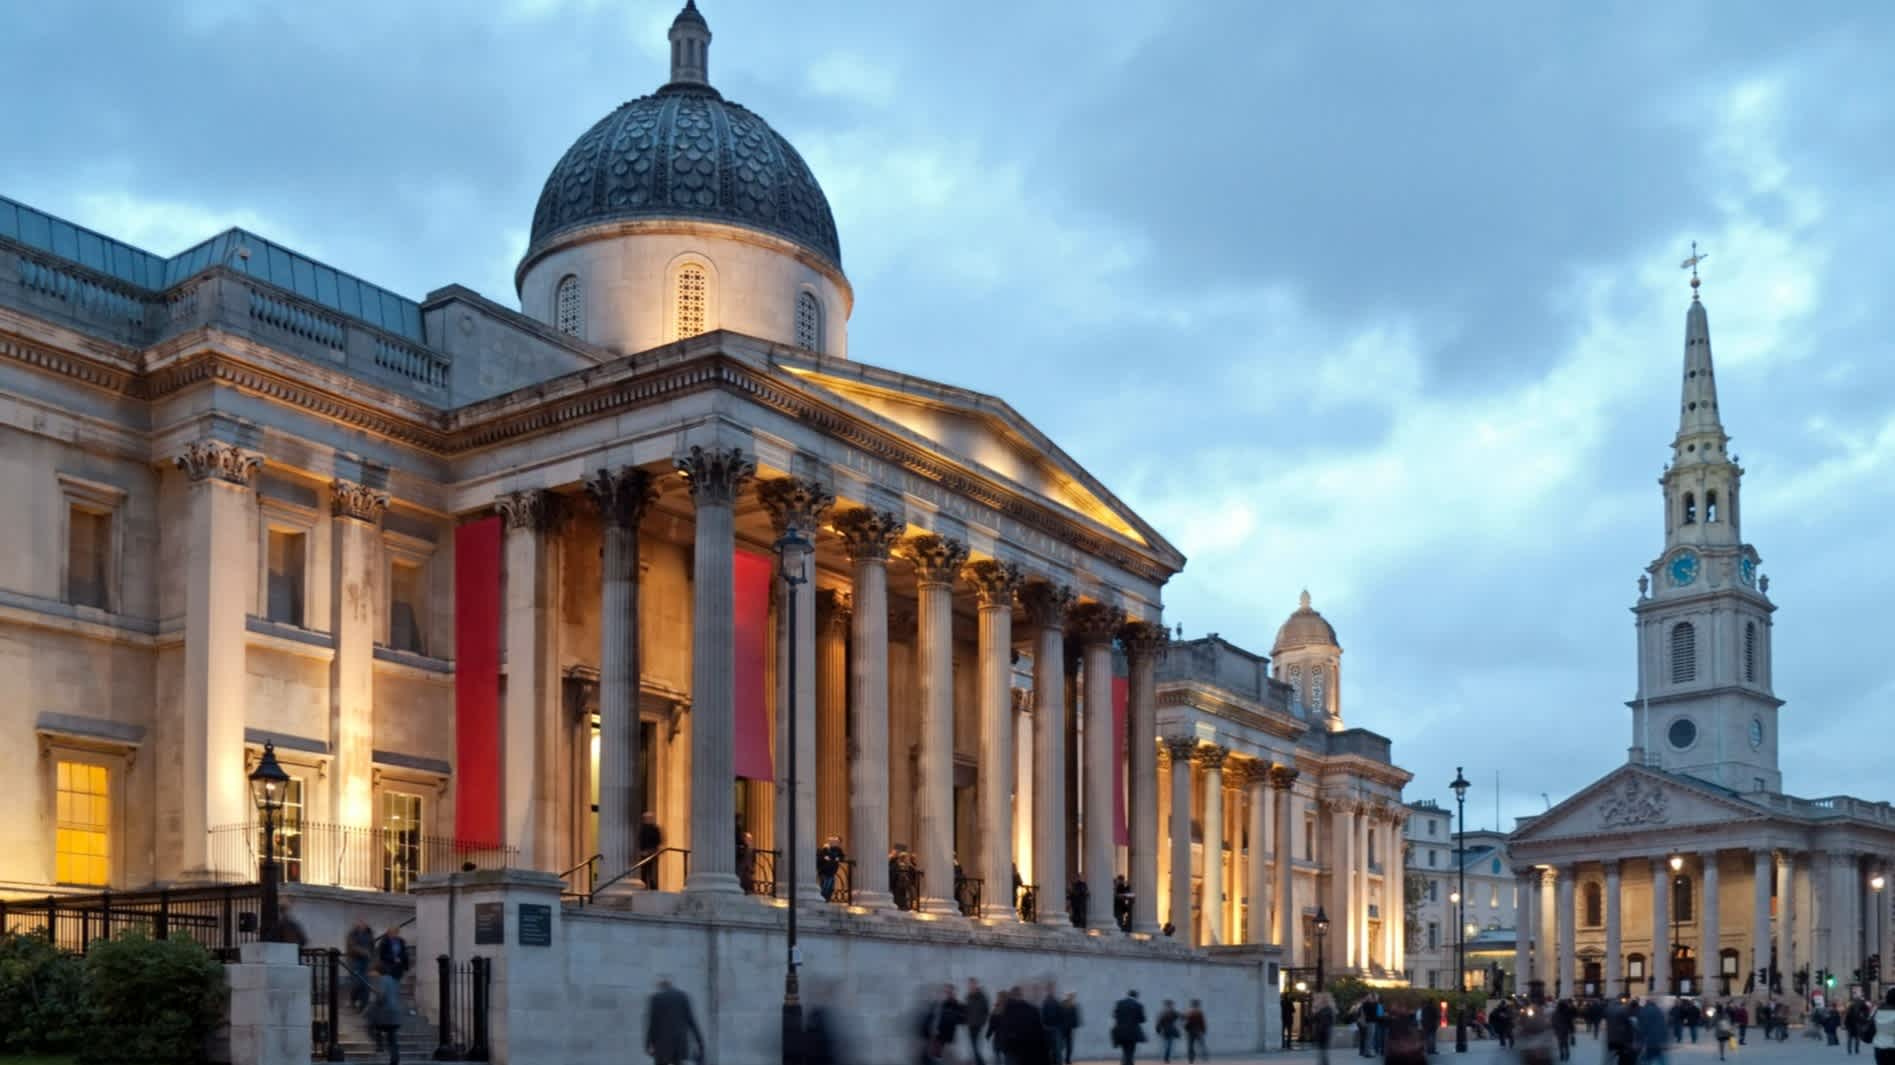 La National Gallery et l'église St. Martin's in the Fields au crépuscule. Trafalgar Square, Londres, Angleterre, Royaume-Uni